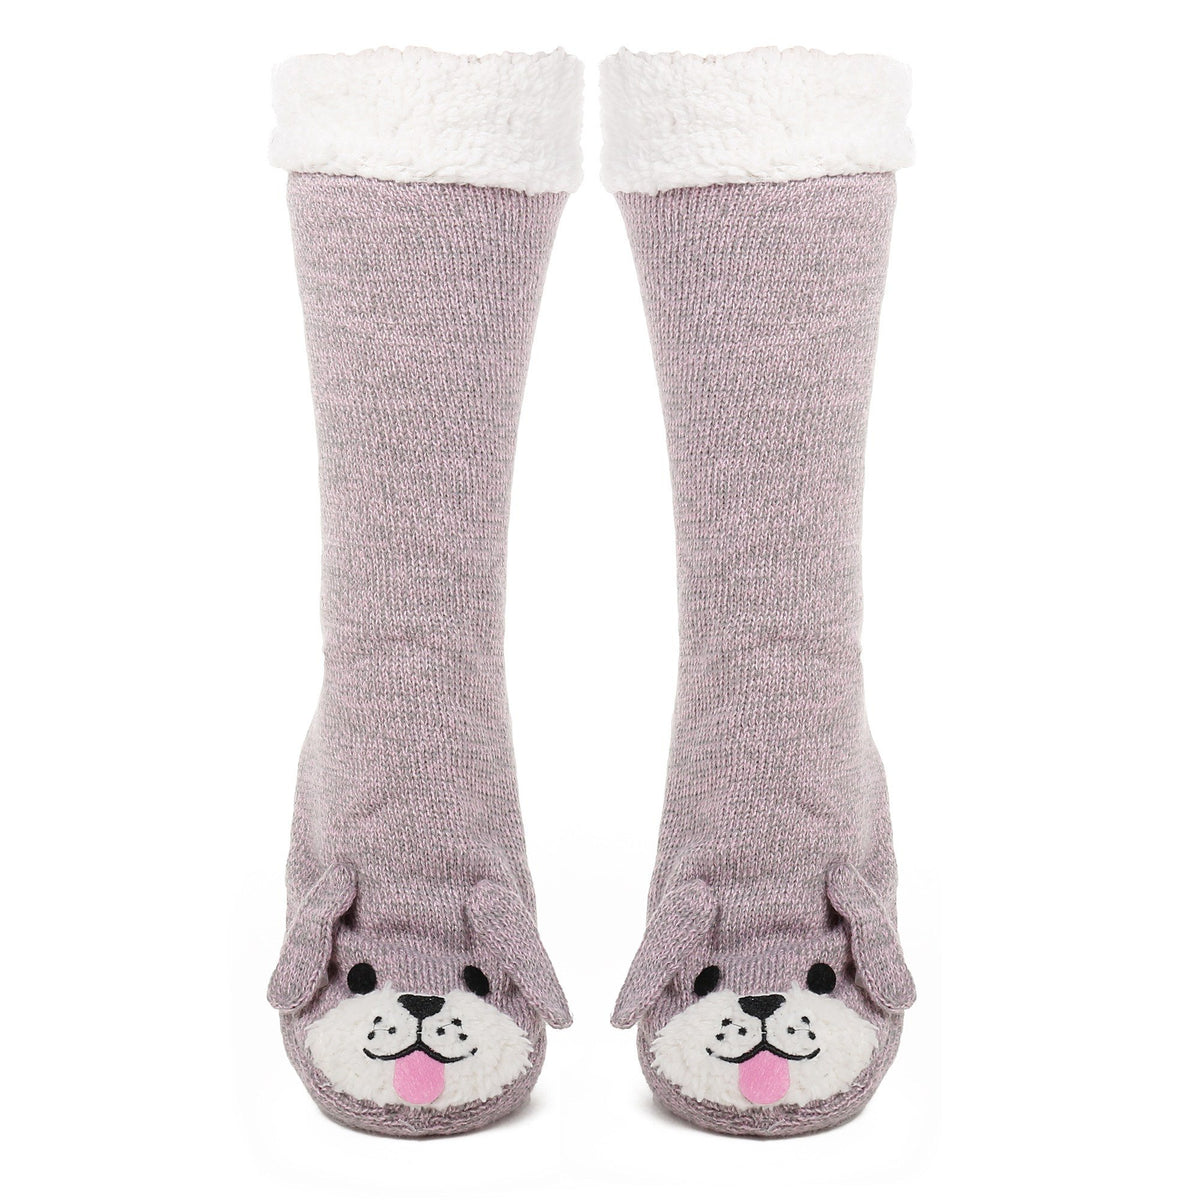 Women's Cute Knit Dog Slipper Socks - Pink/Grey